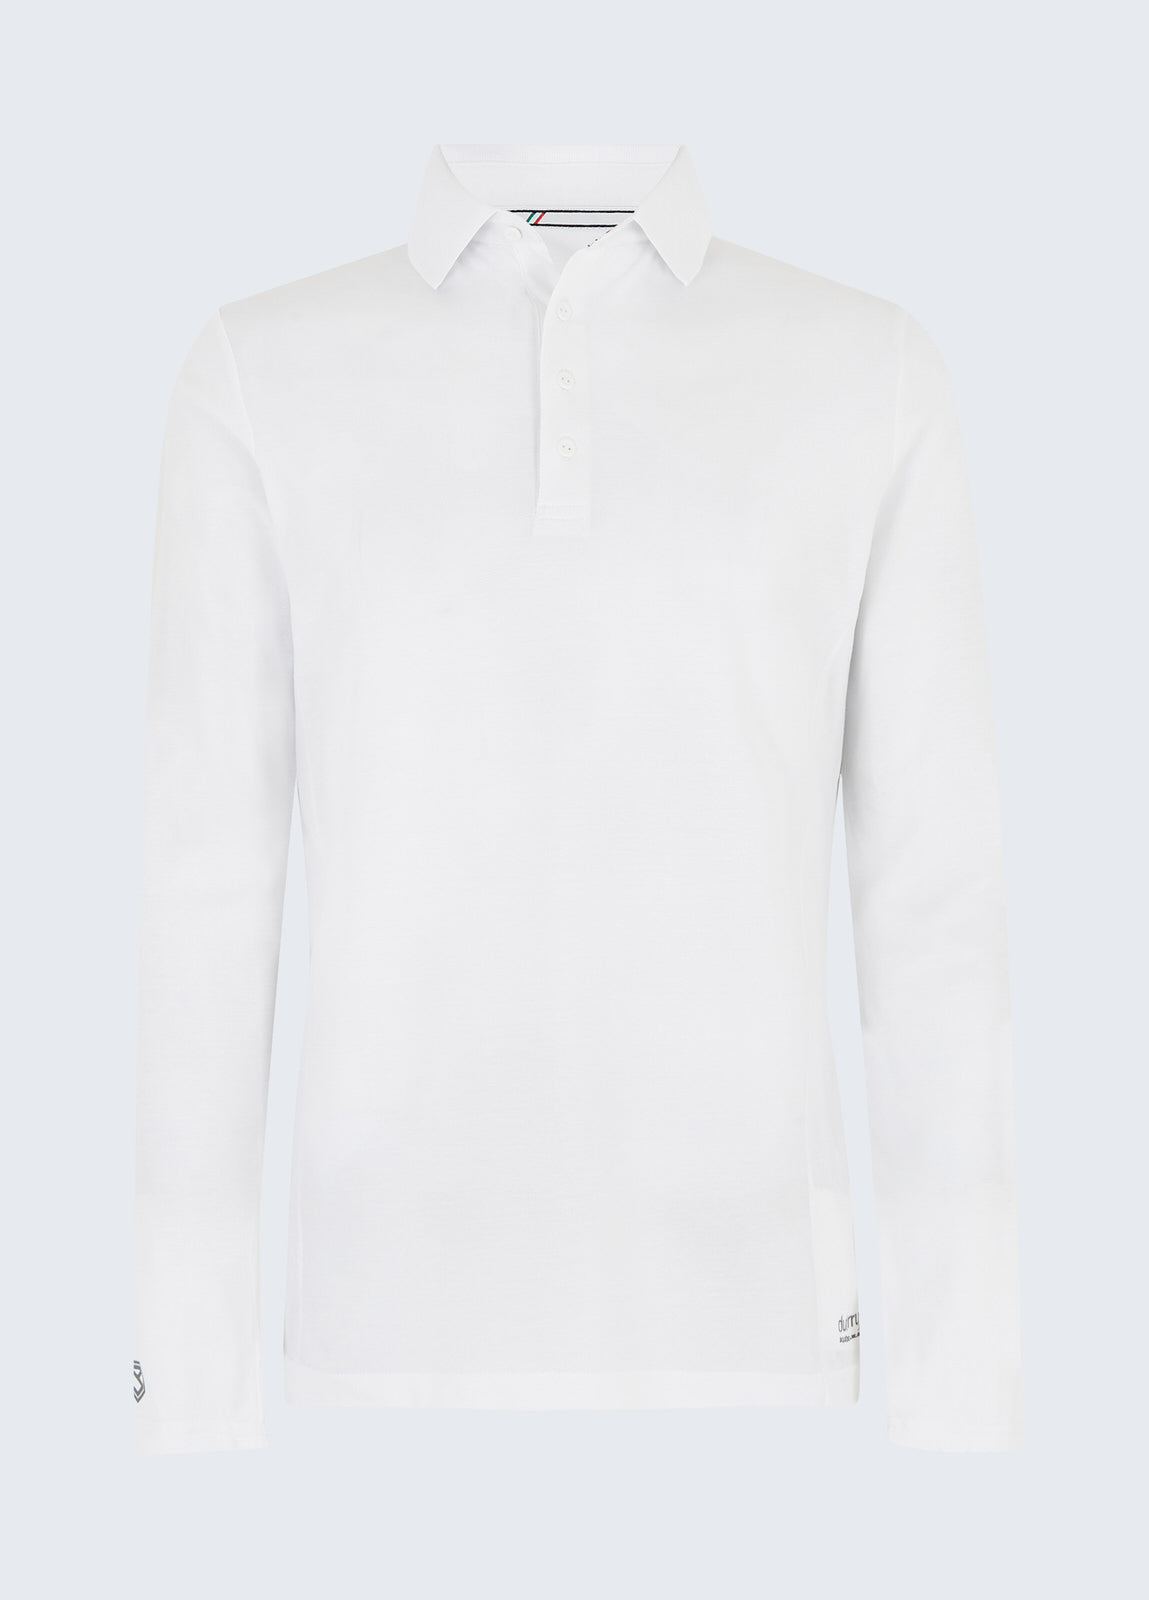 Freshford Unisex Long-sleeved Polo - White